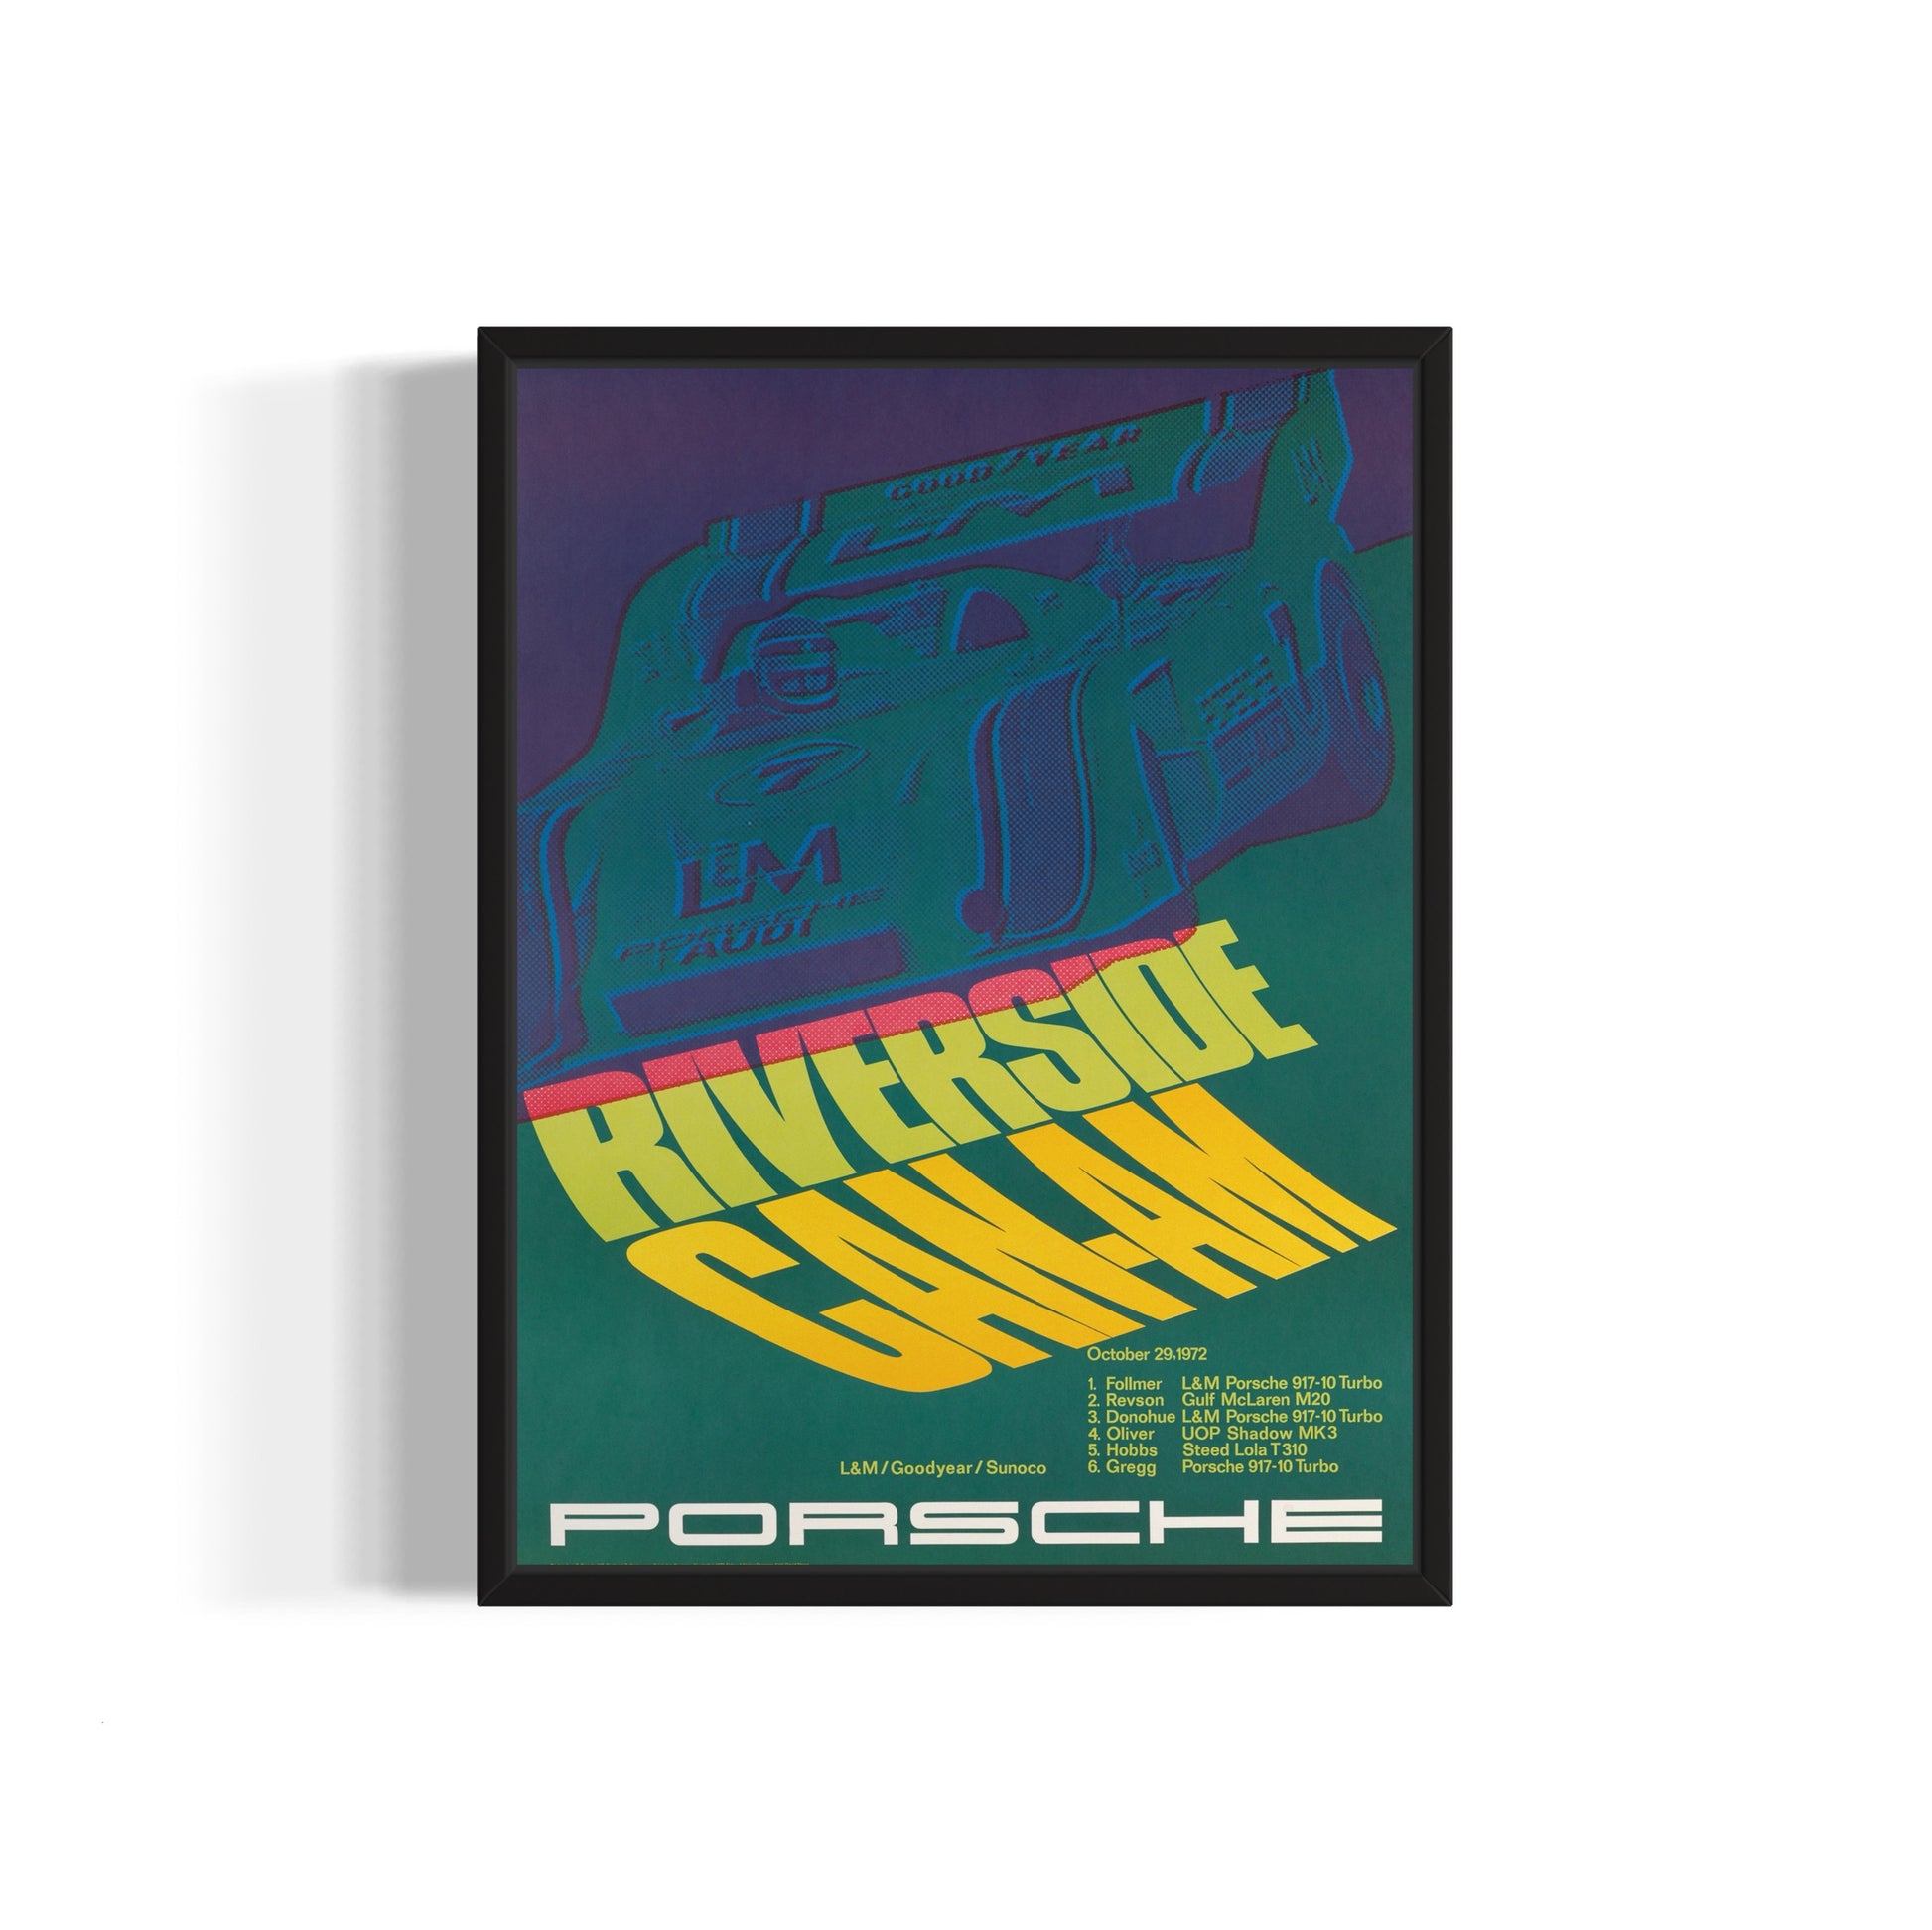 Porsche Poster #15 - Wall of Venus